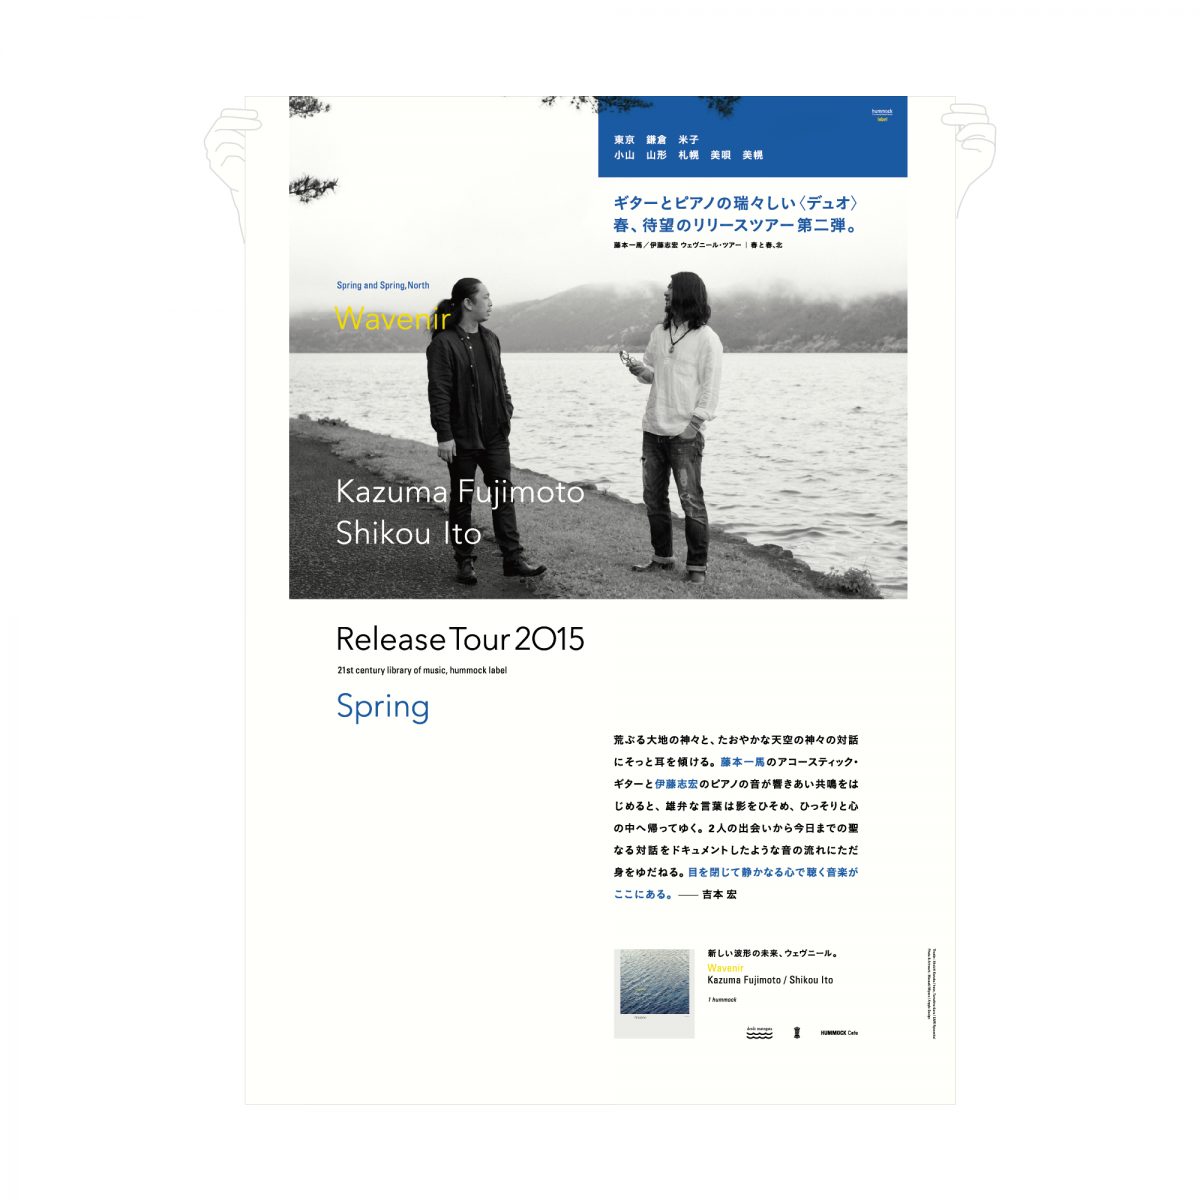 Hummock Label｜藤本一馬 伊藤志宏 ウェヴニール・ツアー 2015「春 と 春、北」｜パンフレット ポスター グラフィックデザイン